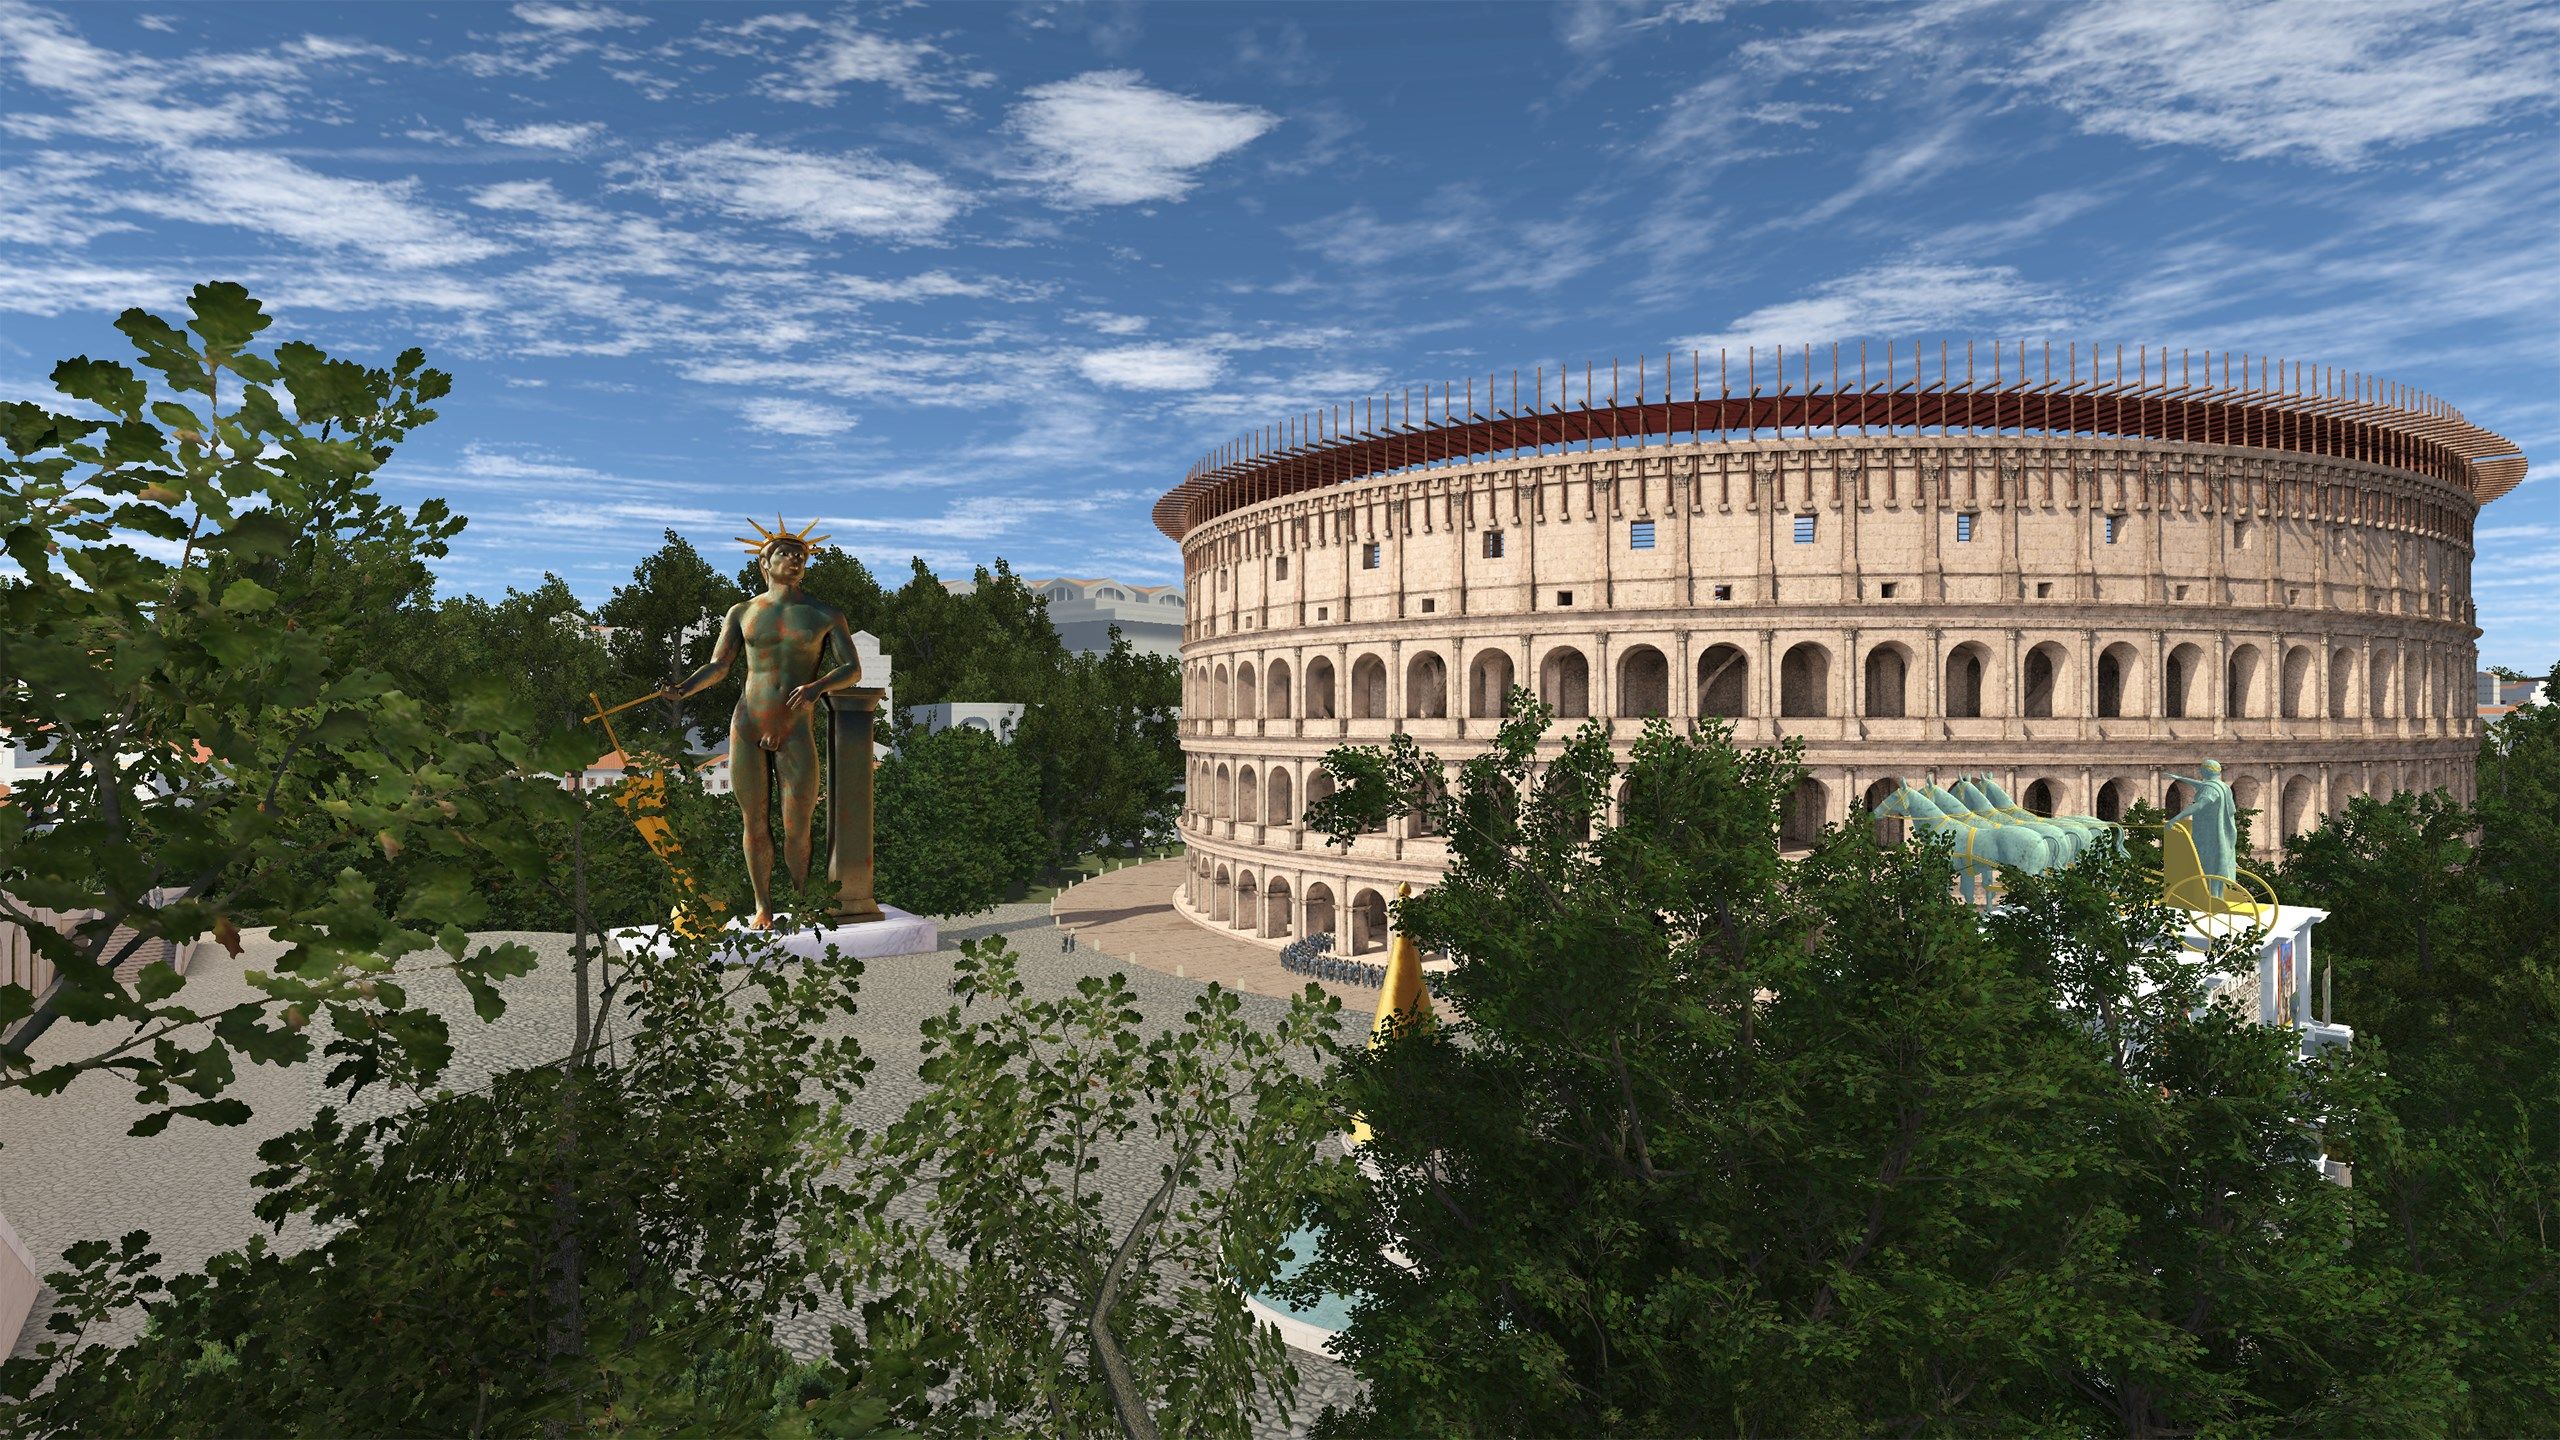 Rome Reborn: The Colosseum District